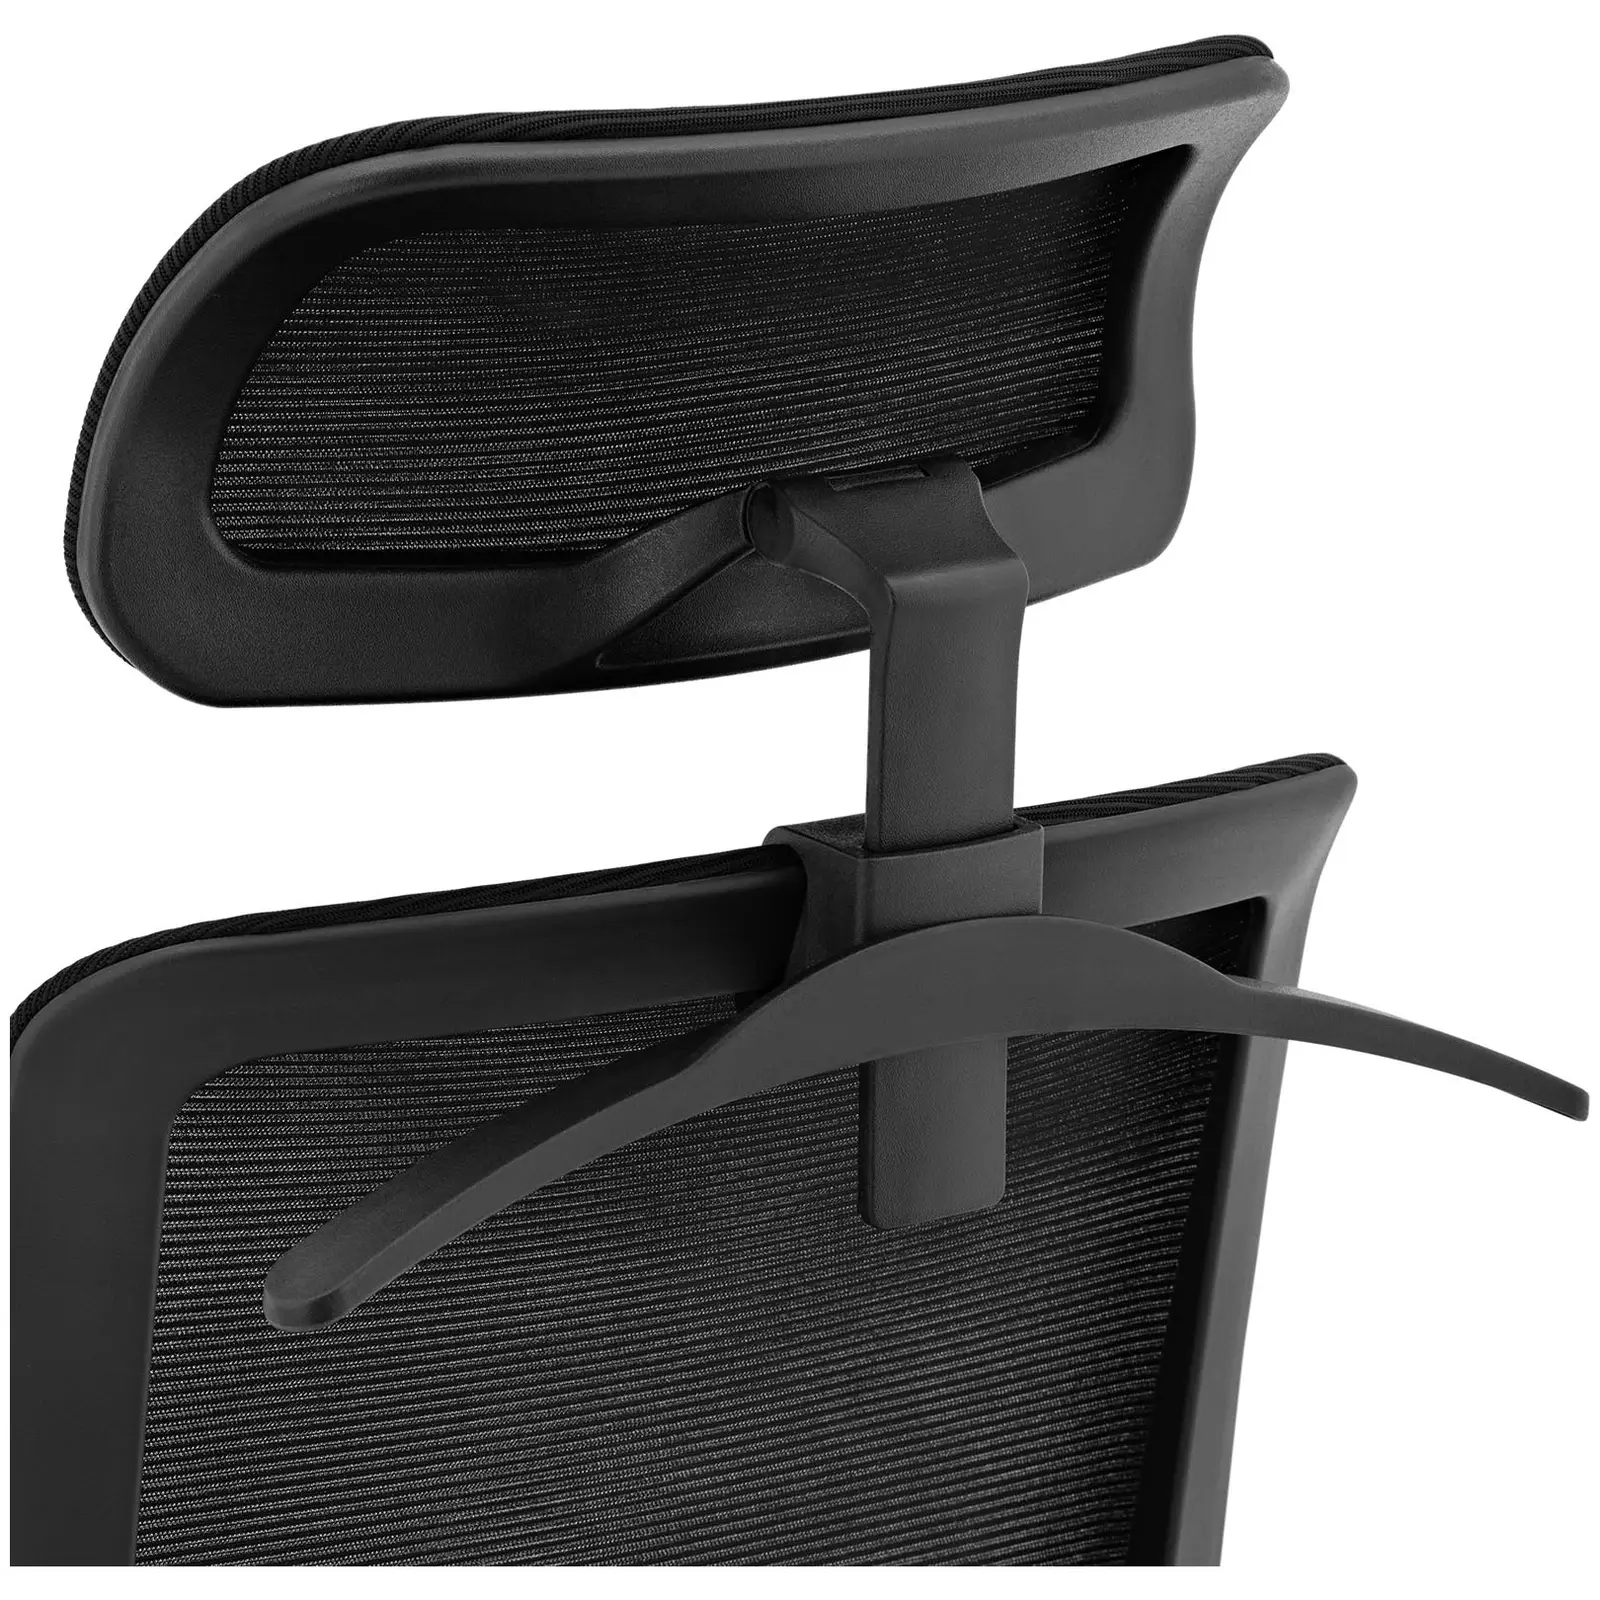 Chaise de bureau - dossier en filet - appuie-tête - siège de 50 x 61 cm - jusqu'à 150 kg - noir